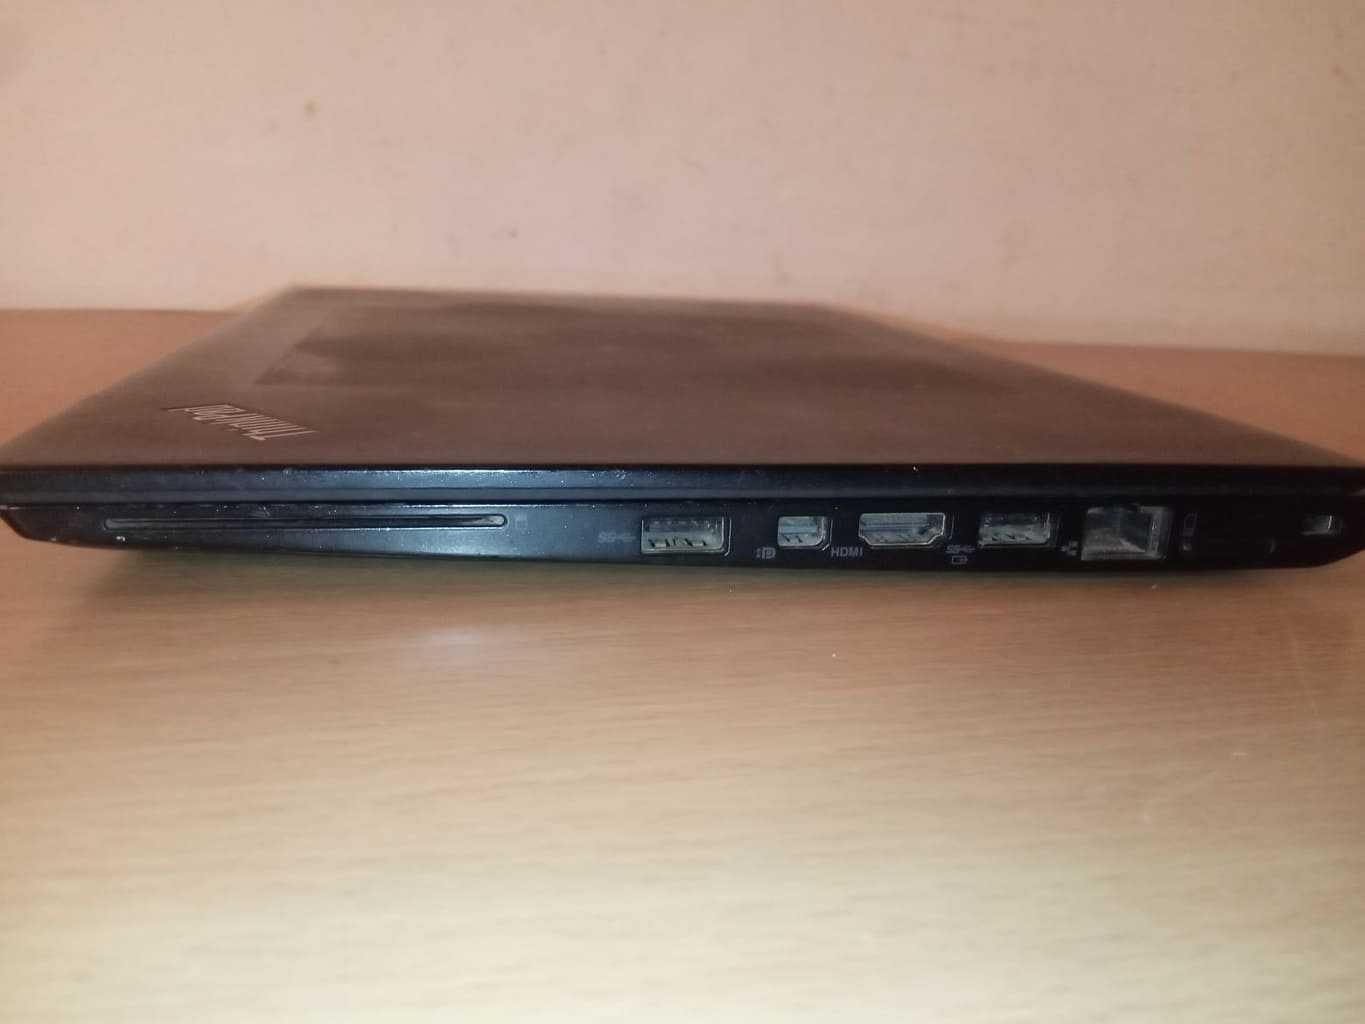 Laptop Lenovo T460s I7-6600U, 8Gb Ram, 256Gb SSD, Full hd, ips!